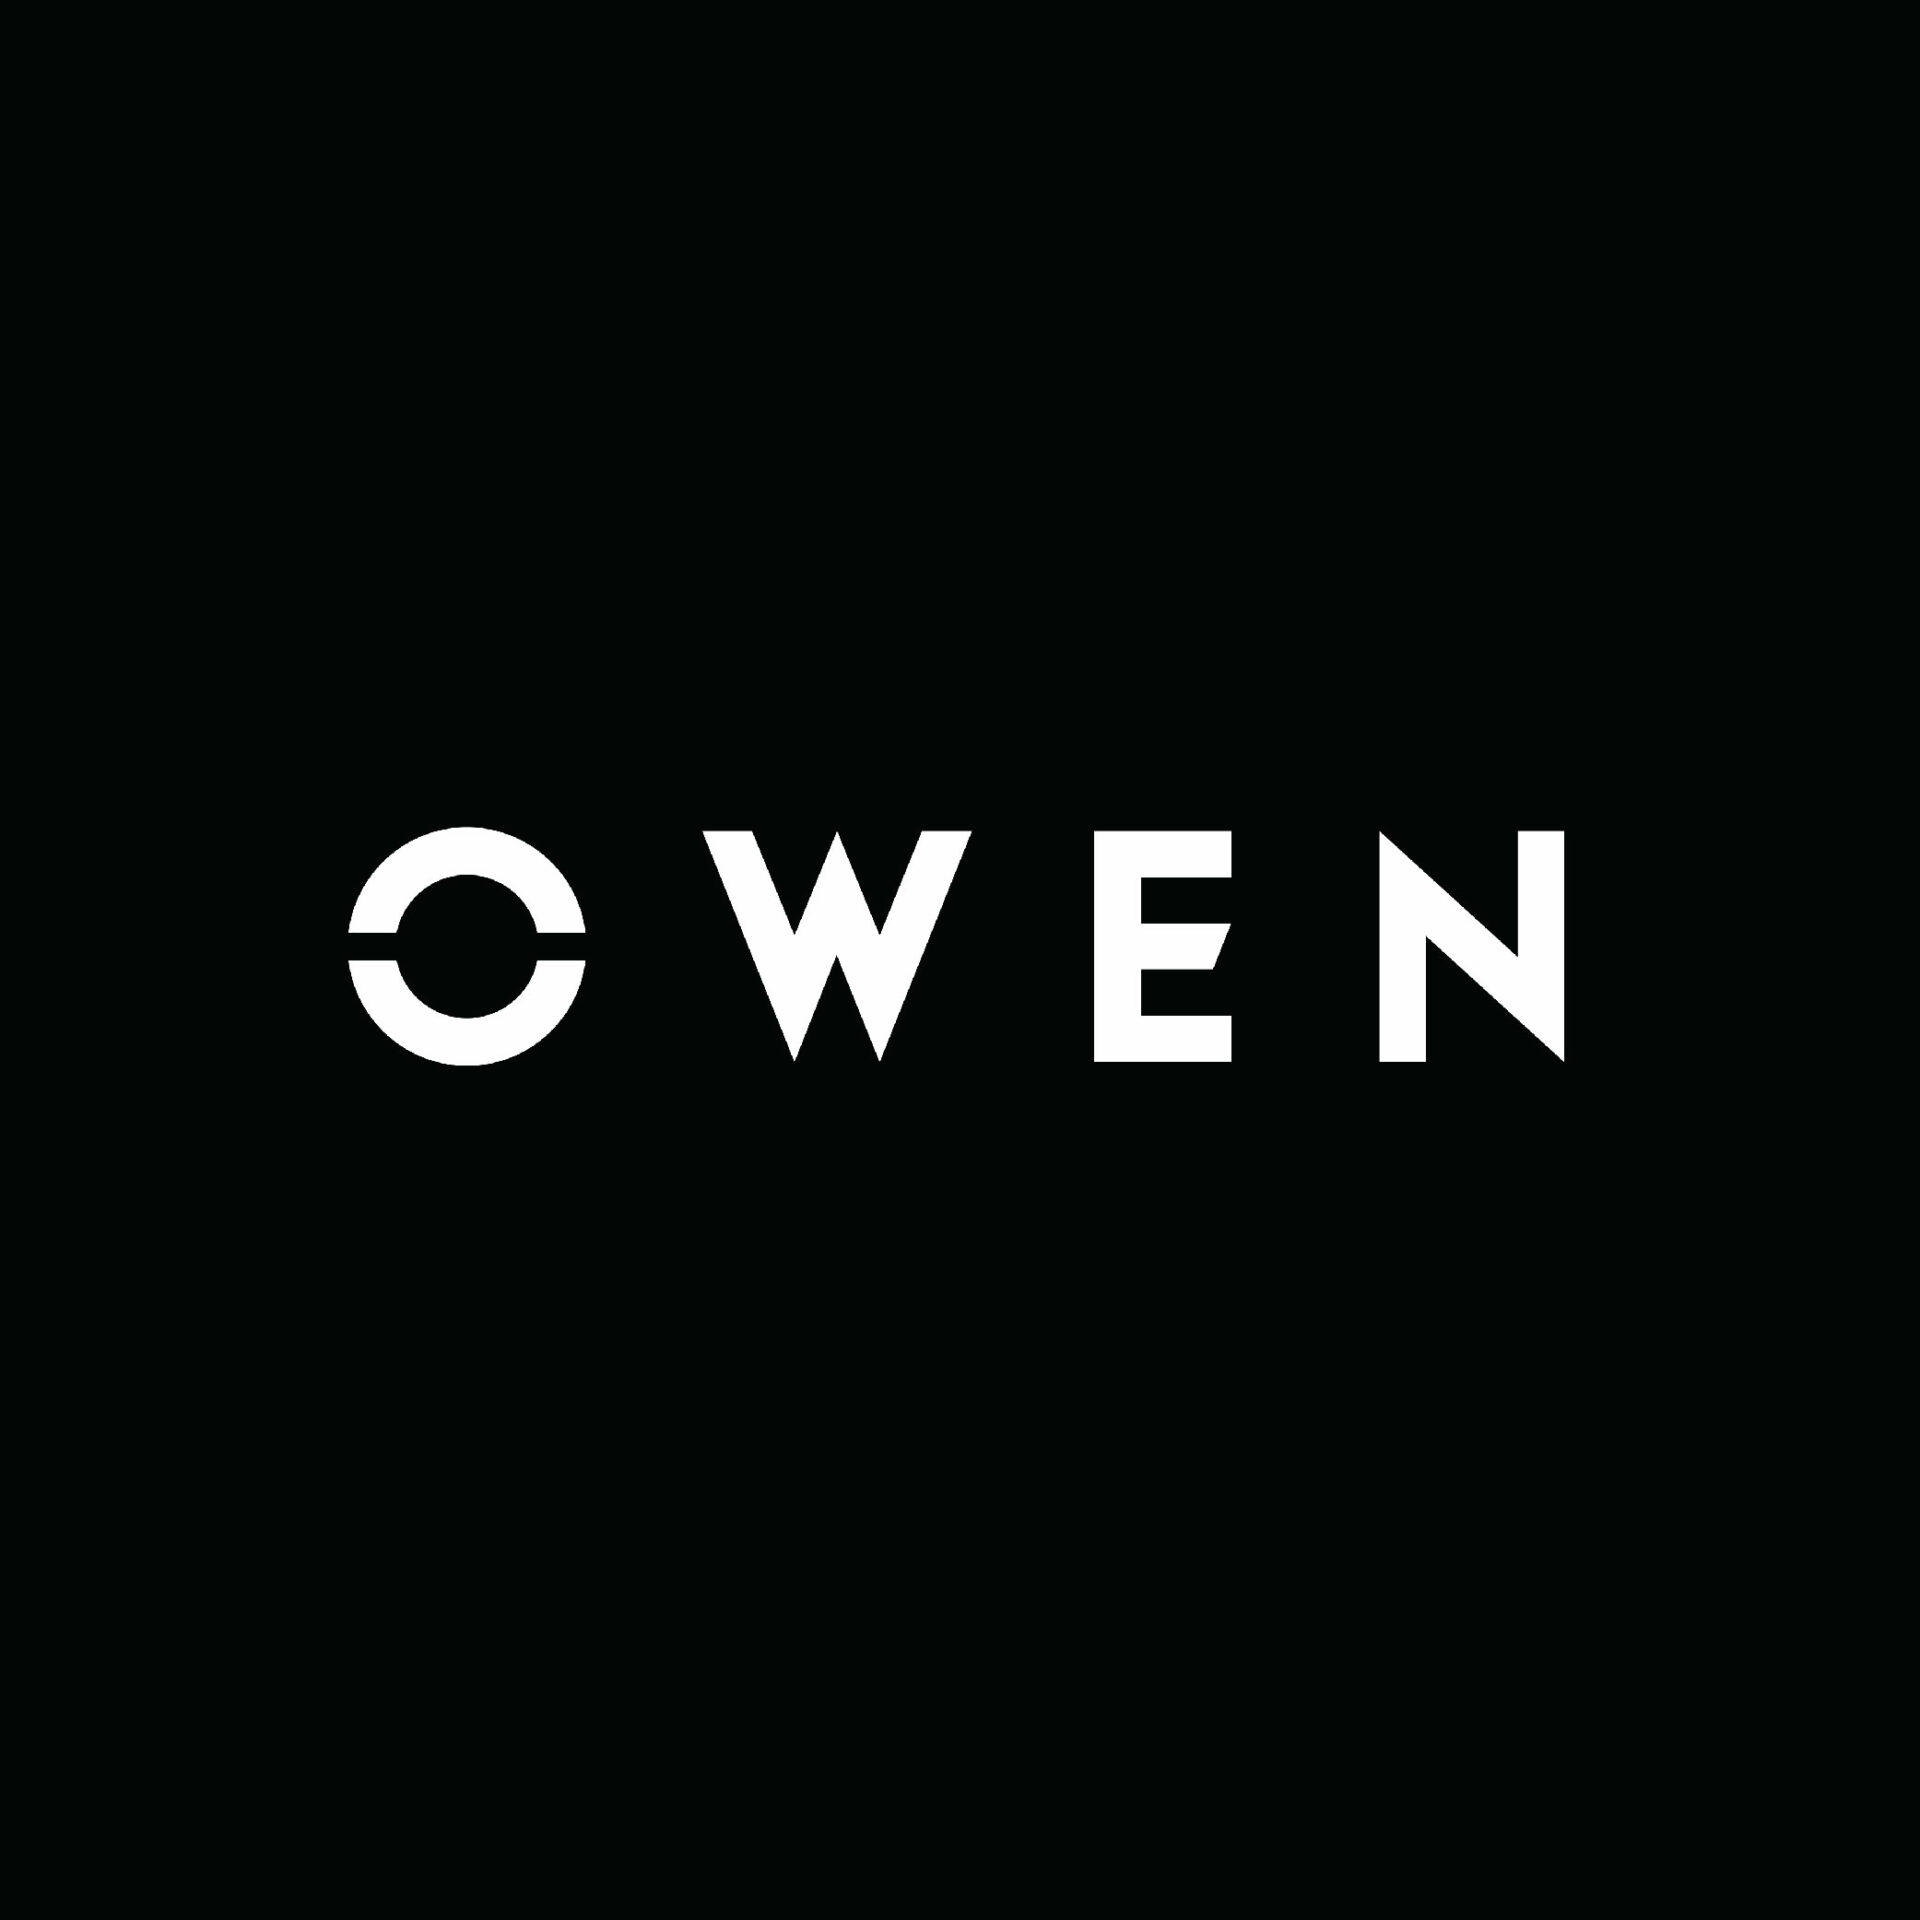 Owen logo 02 scaled